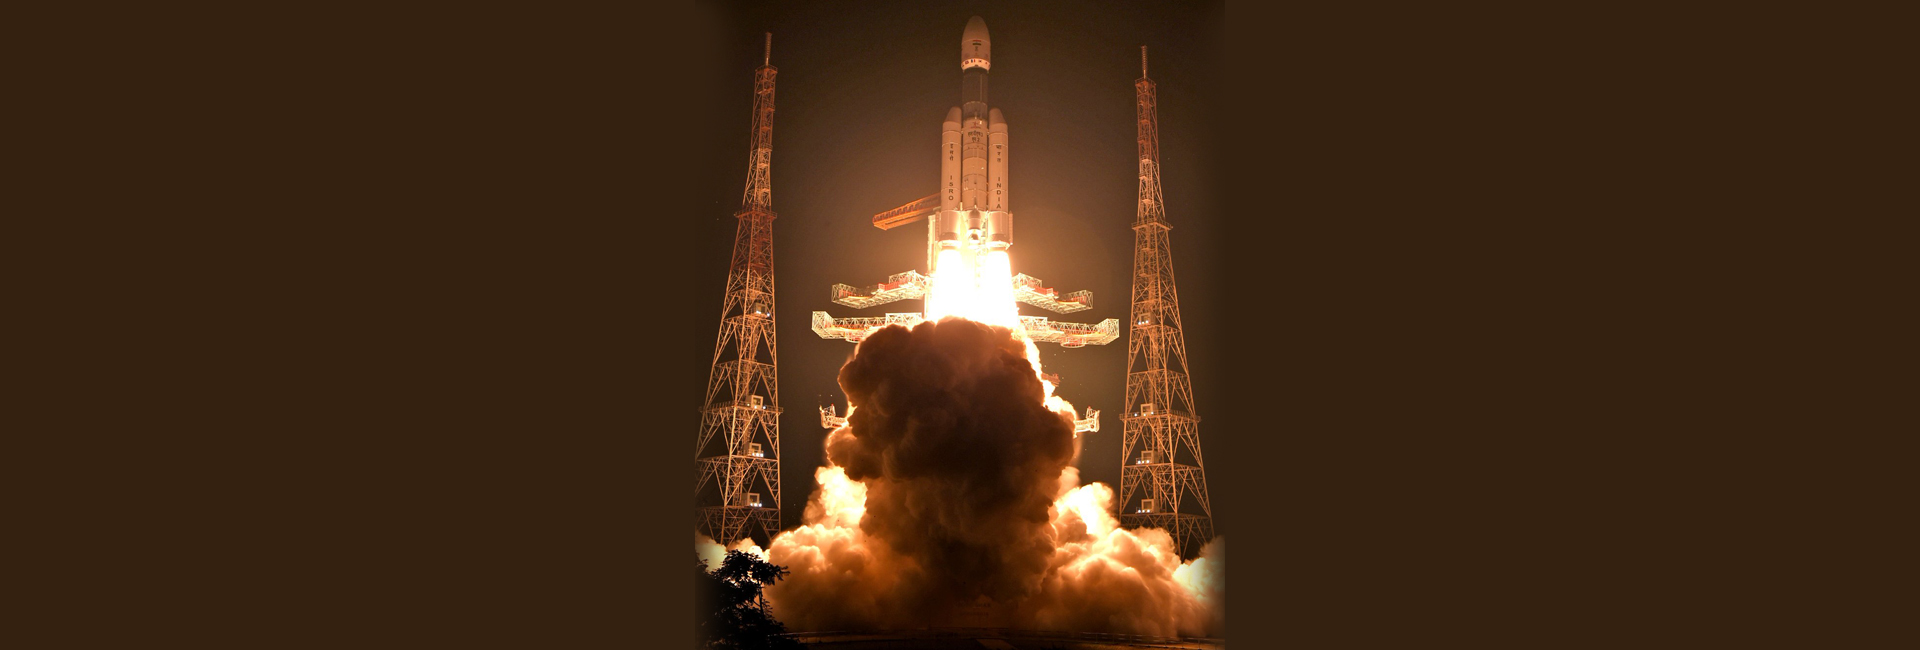 इसरो ने LVM36 M3 . के माध्यम से 2 उपग्रहों का प्रक्षेपण किया